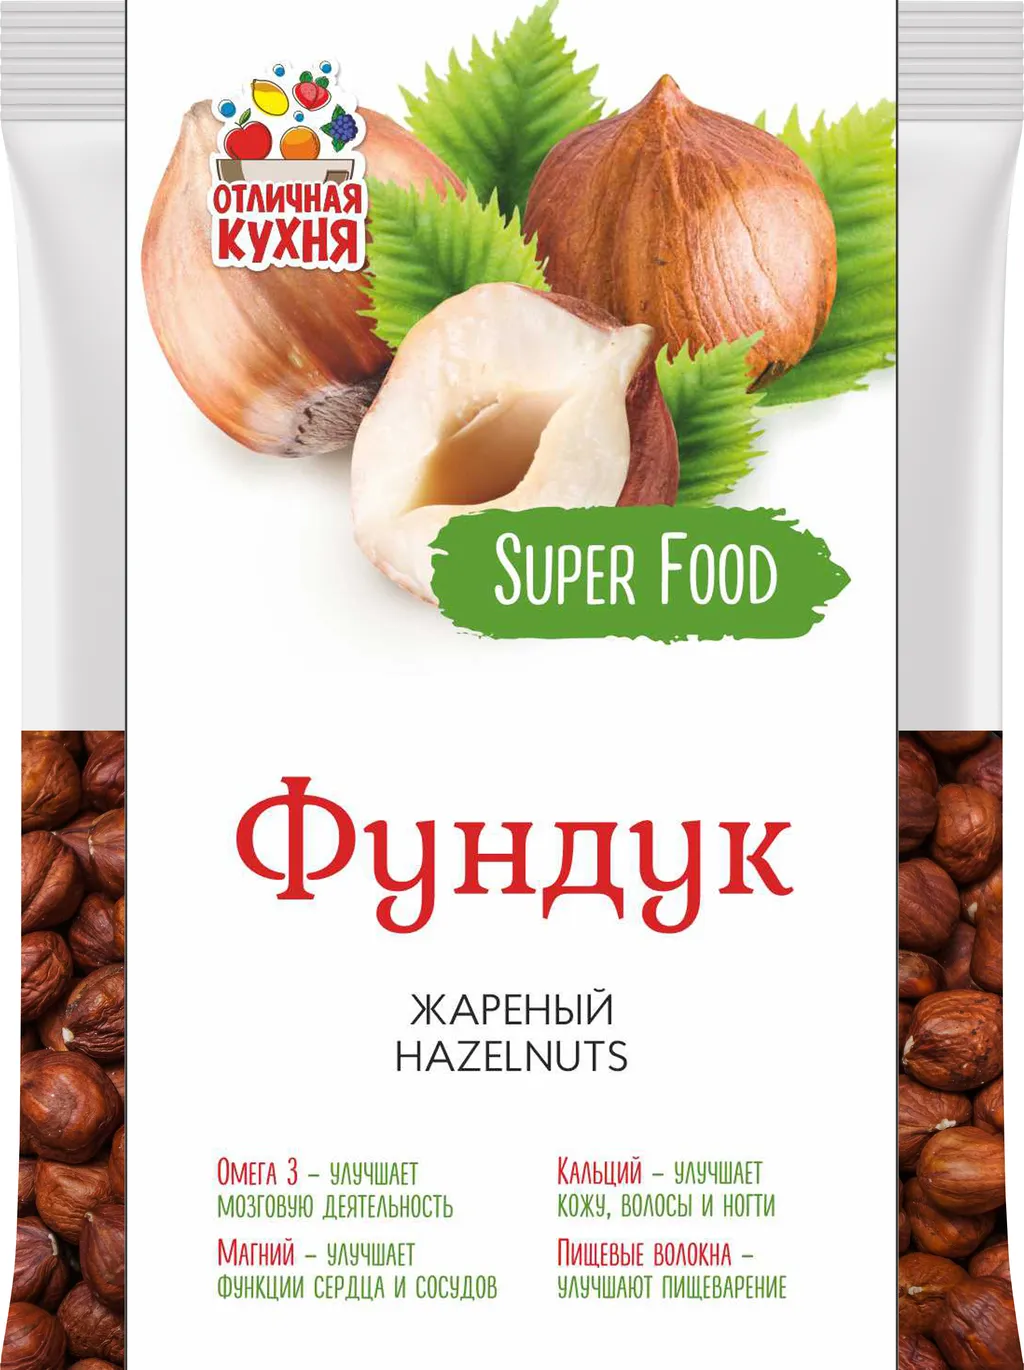 орехи, сухофрукты в Челябинске и Челябинской области 4